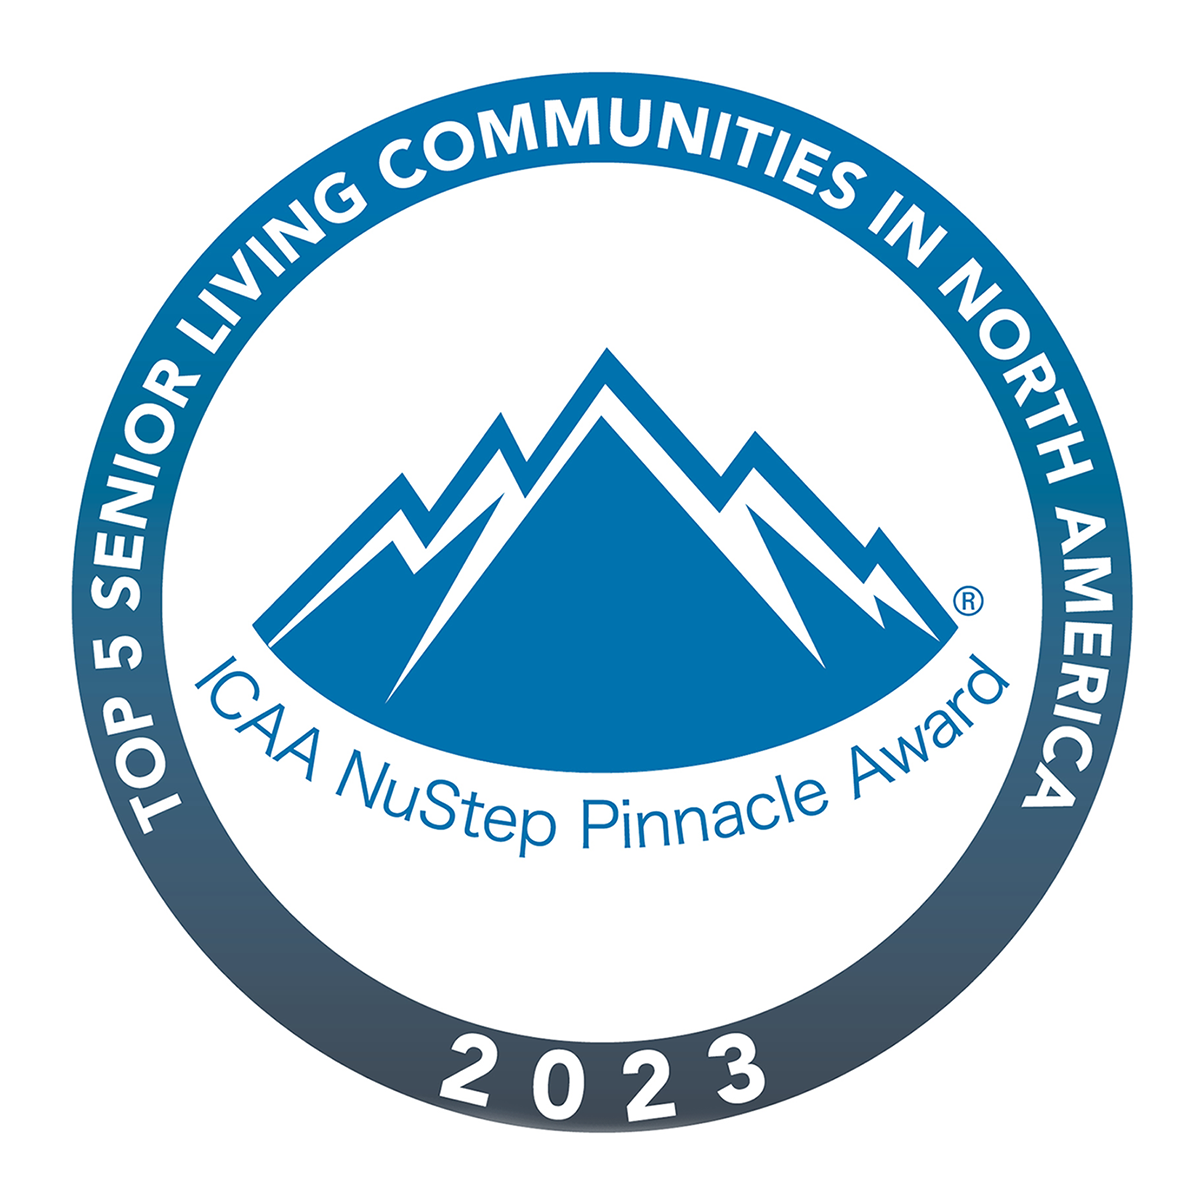 IACAA NuStep Pinnacle Award - Top 5 senior living communities in North America - 2023